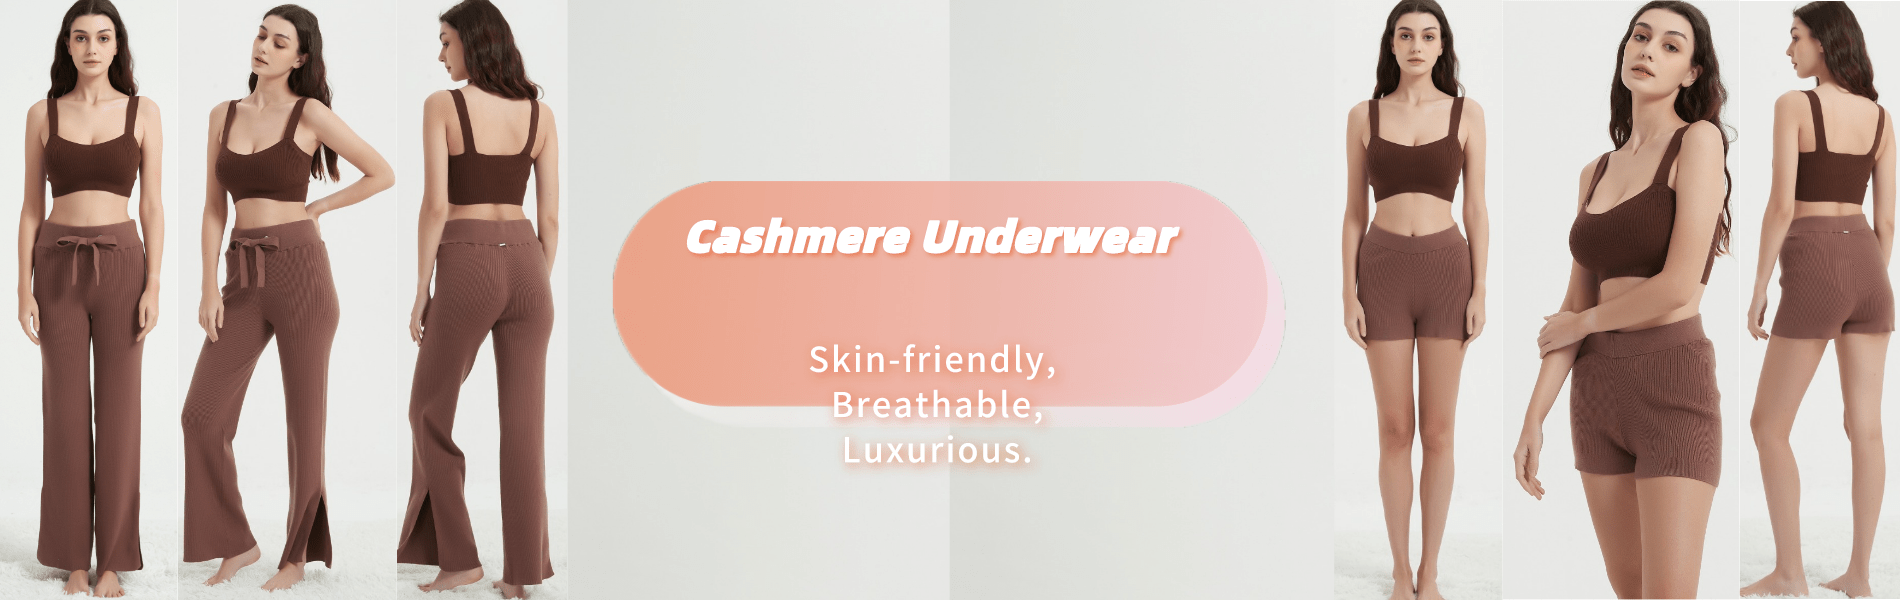 Ladies' Cashmere Underwear